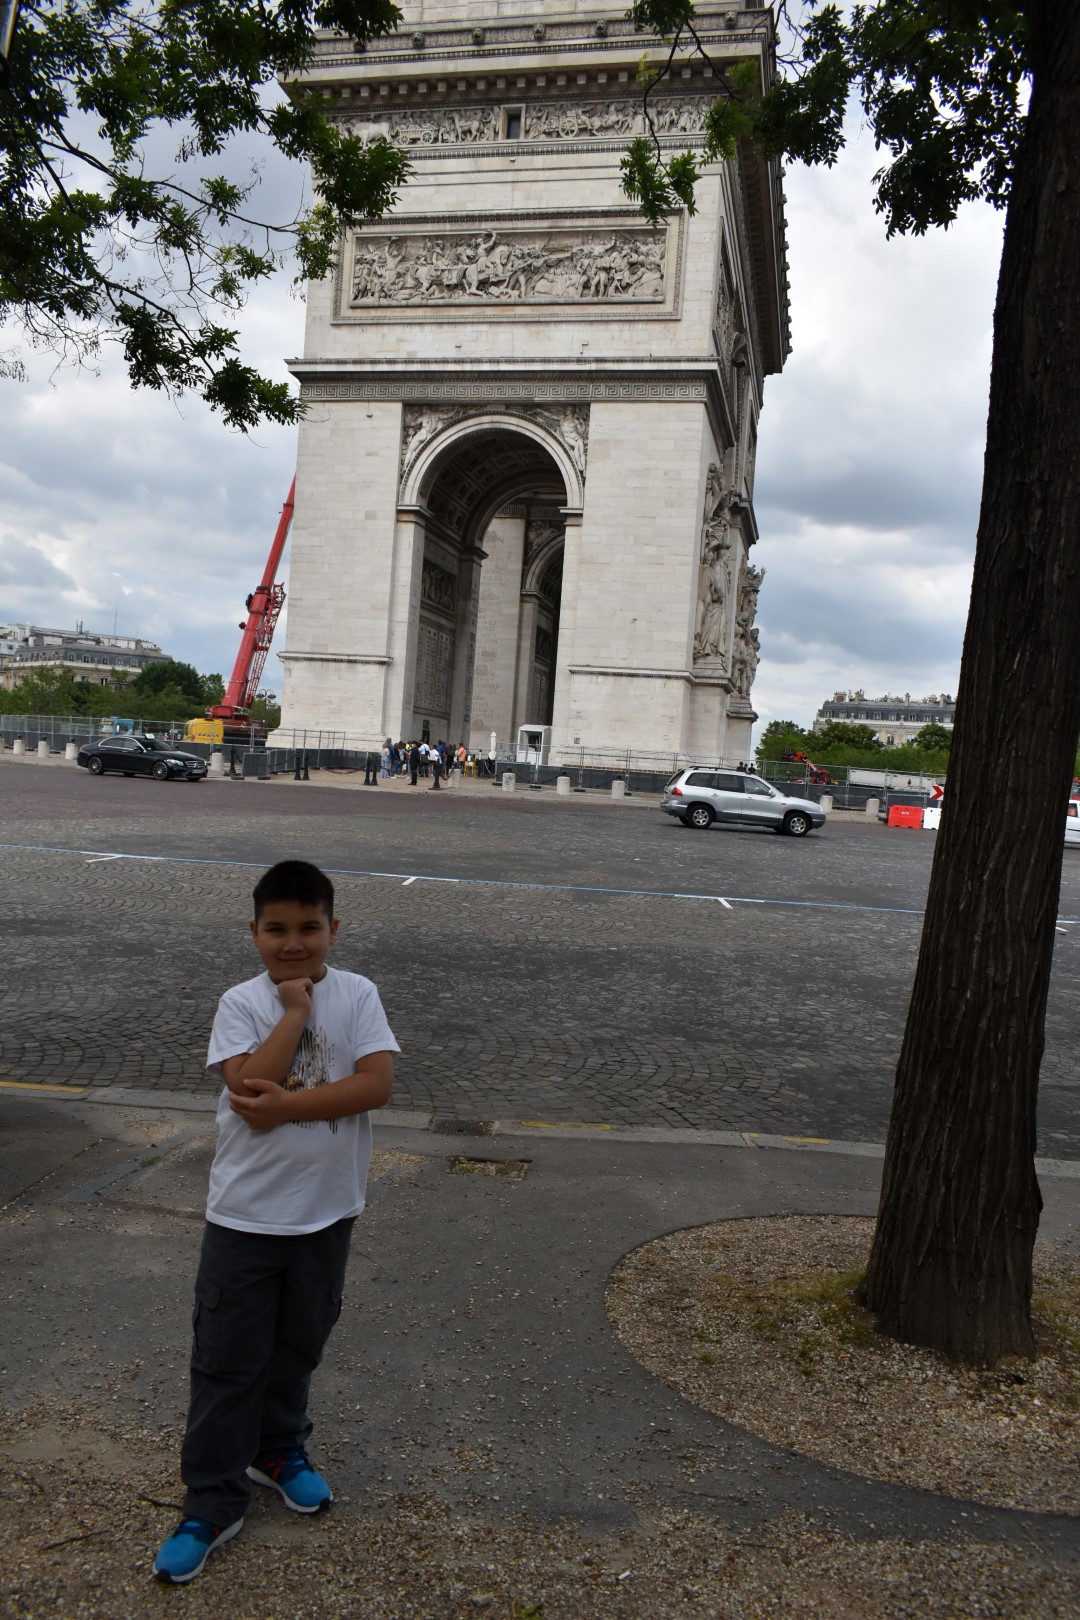 Arc de Triomphe. Place Charles de Gaulle, Paris